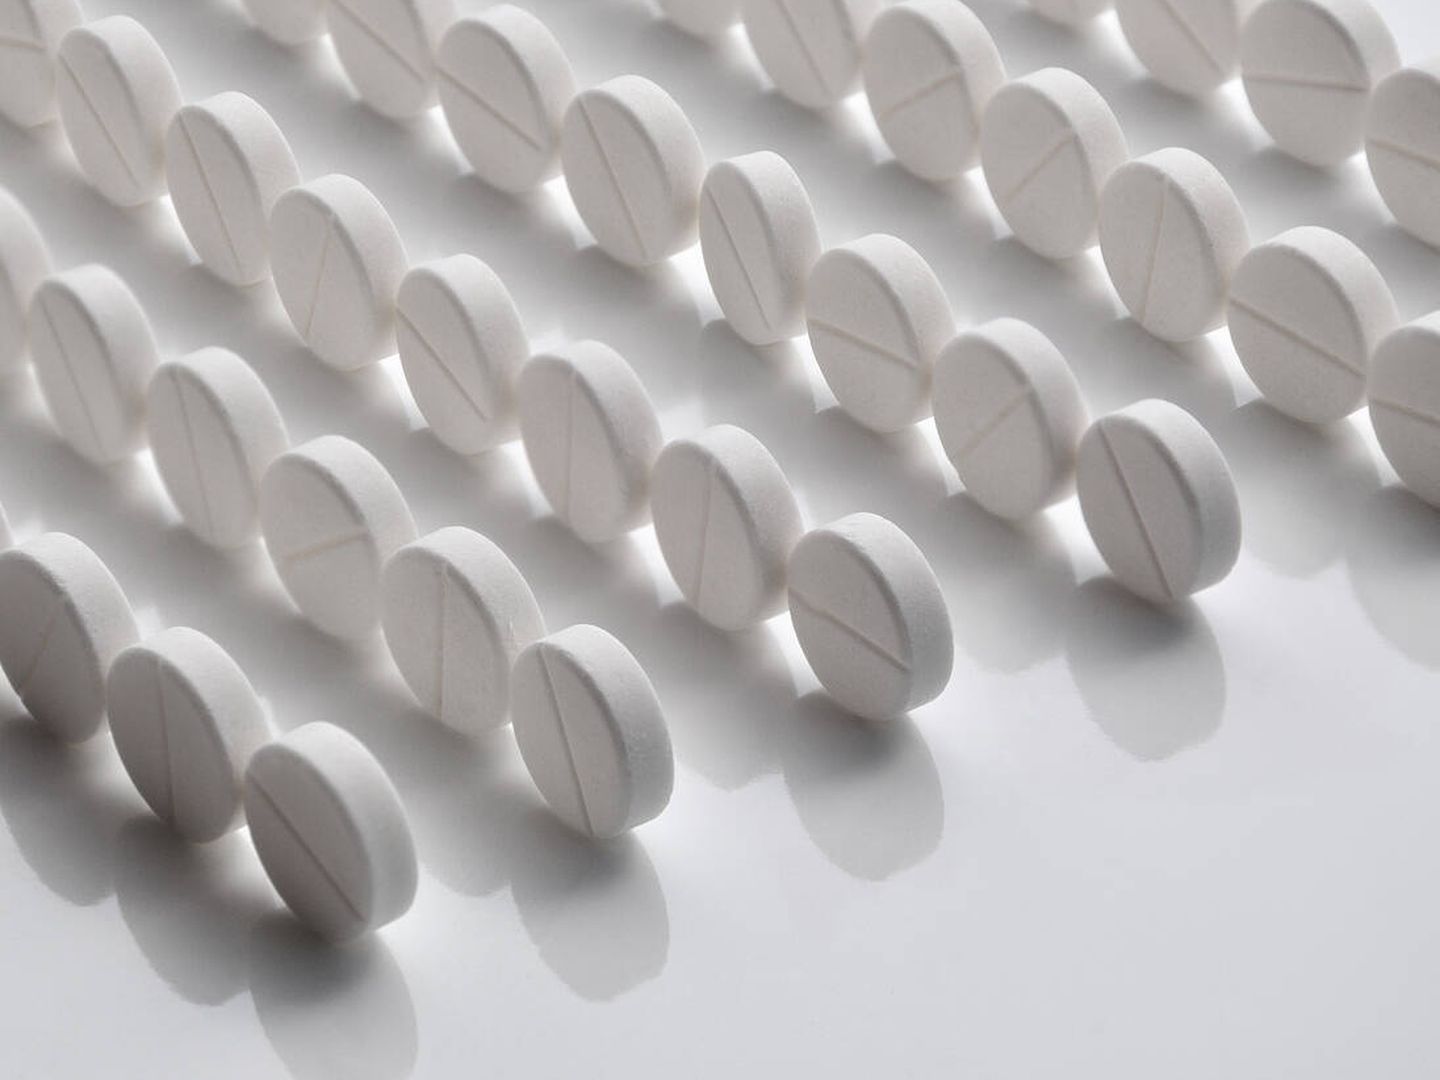 Cada día se consumen 100 toneladas de aspirinas en el mundo. (iStock)